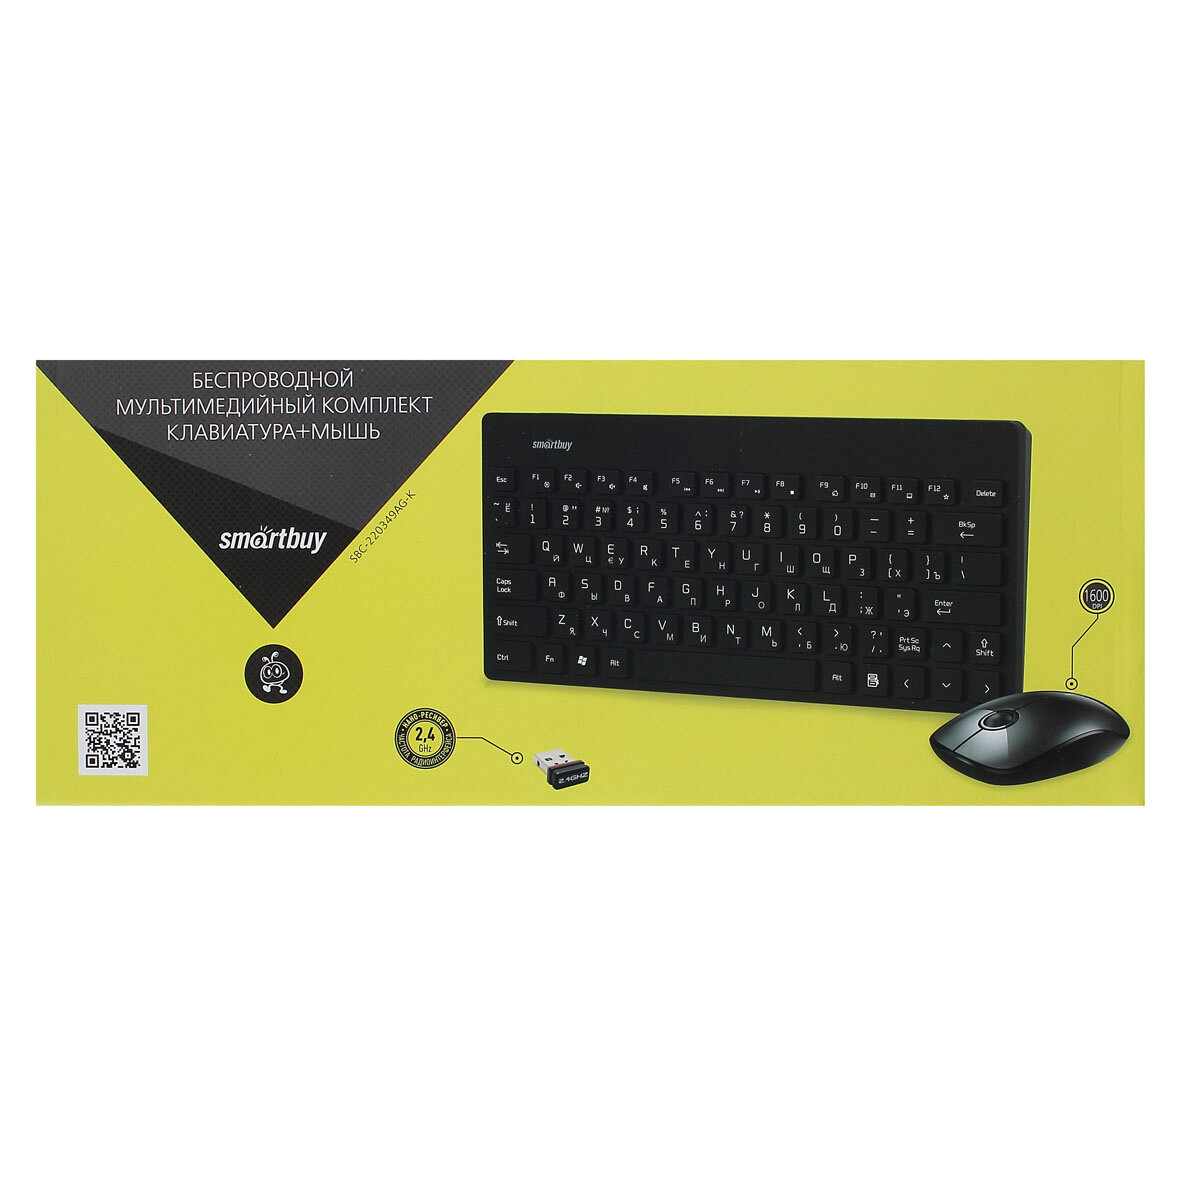 Клавиатура + мышь Smartbuy 220349AG черный, беспроводные (SBC-220349AG-K) /20 - 1 шт.